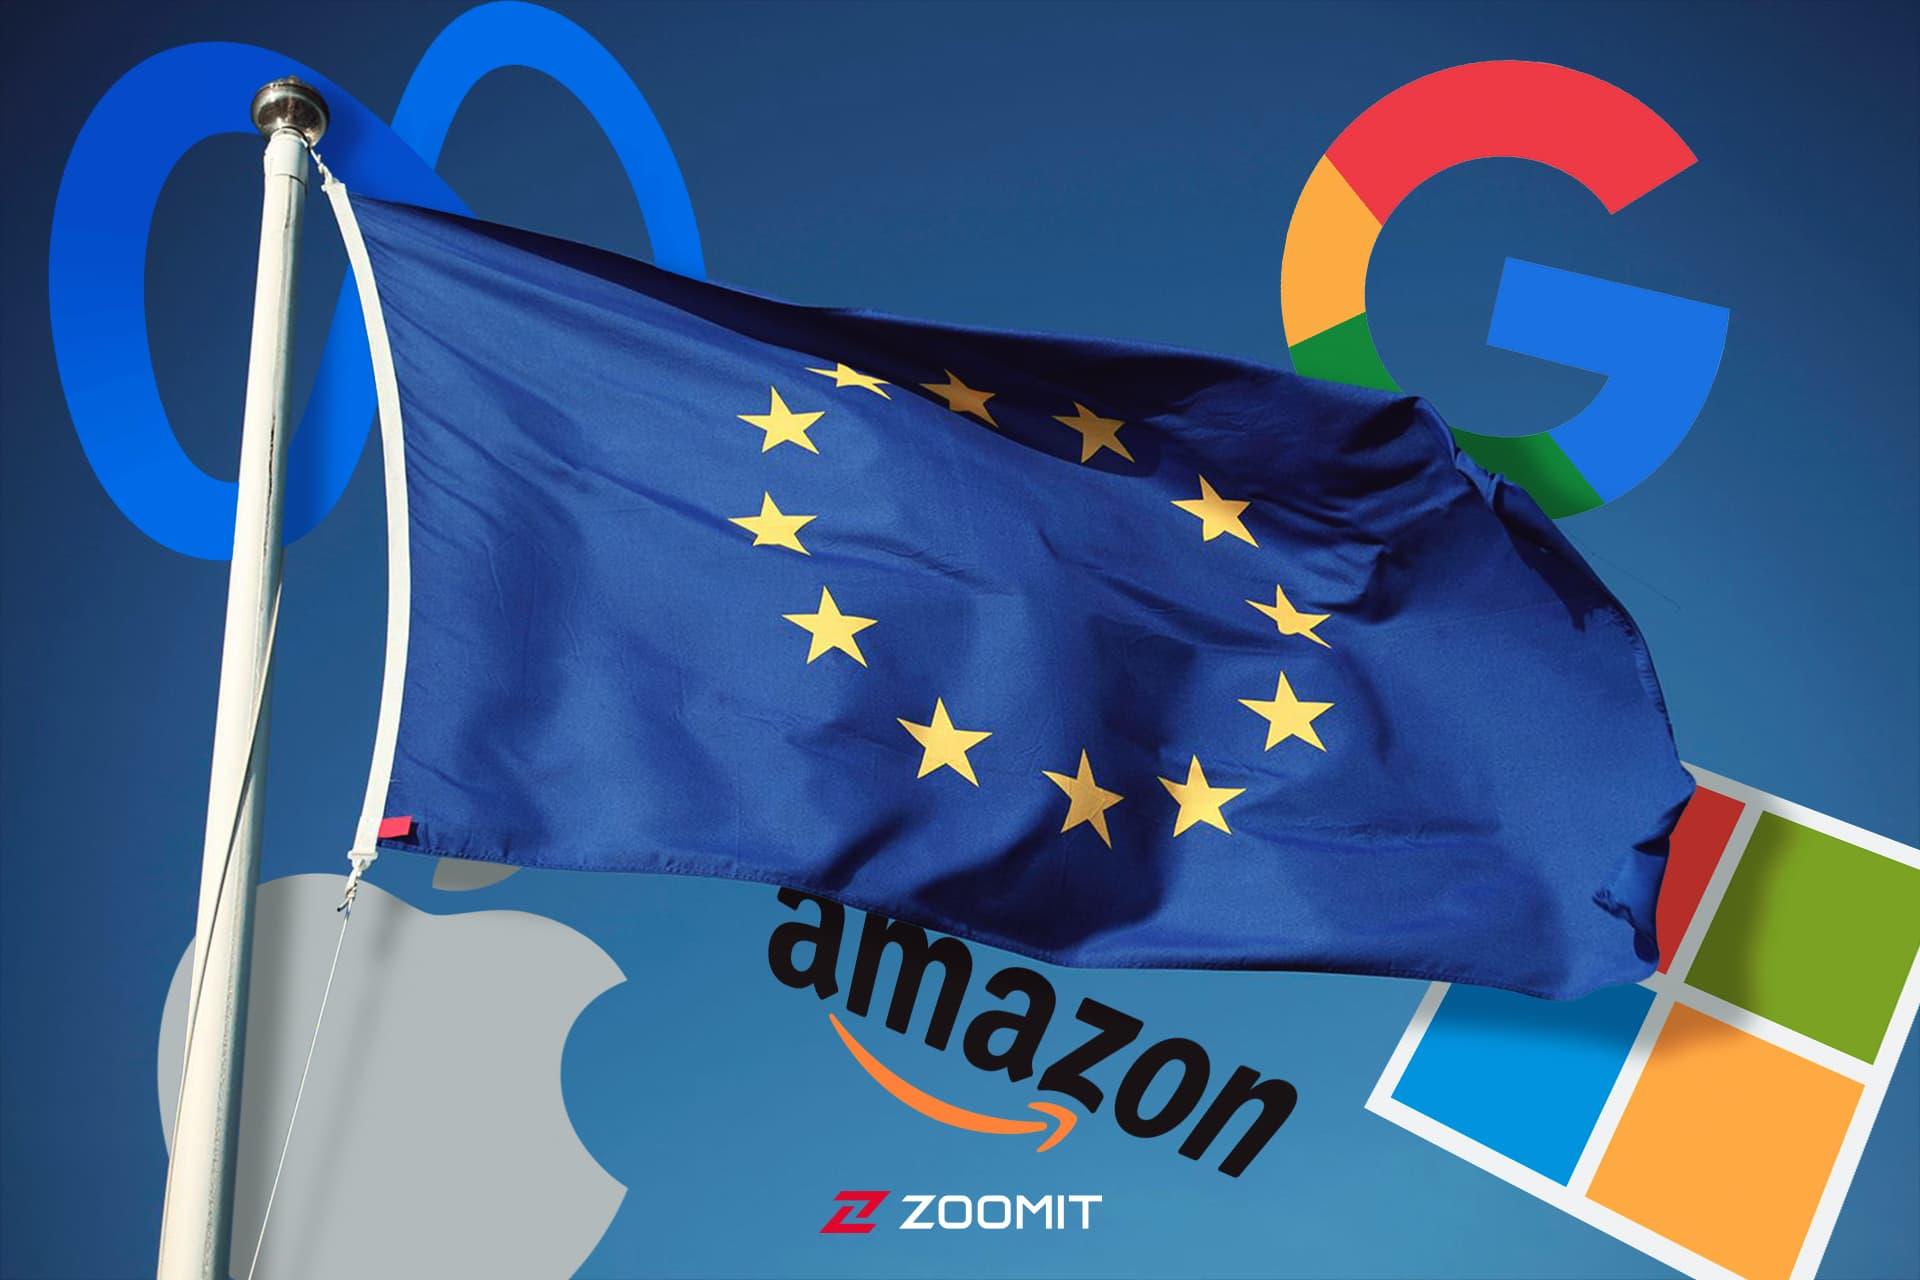 پرچم اتحادیه اروپا در کنار لوگو مایکروسافت گوگل و متا 